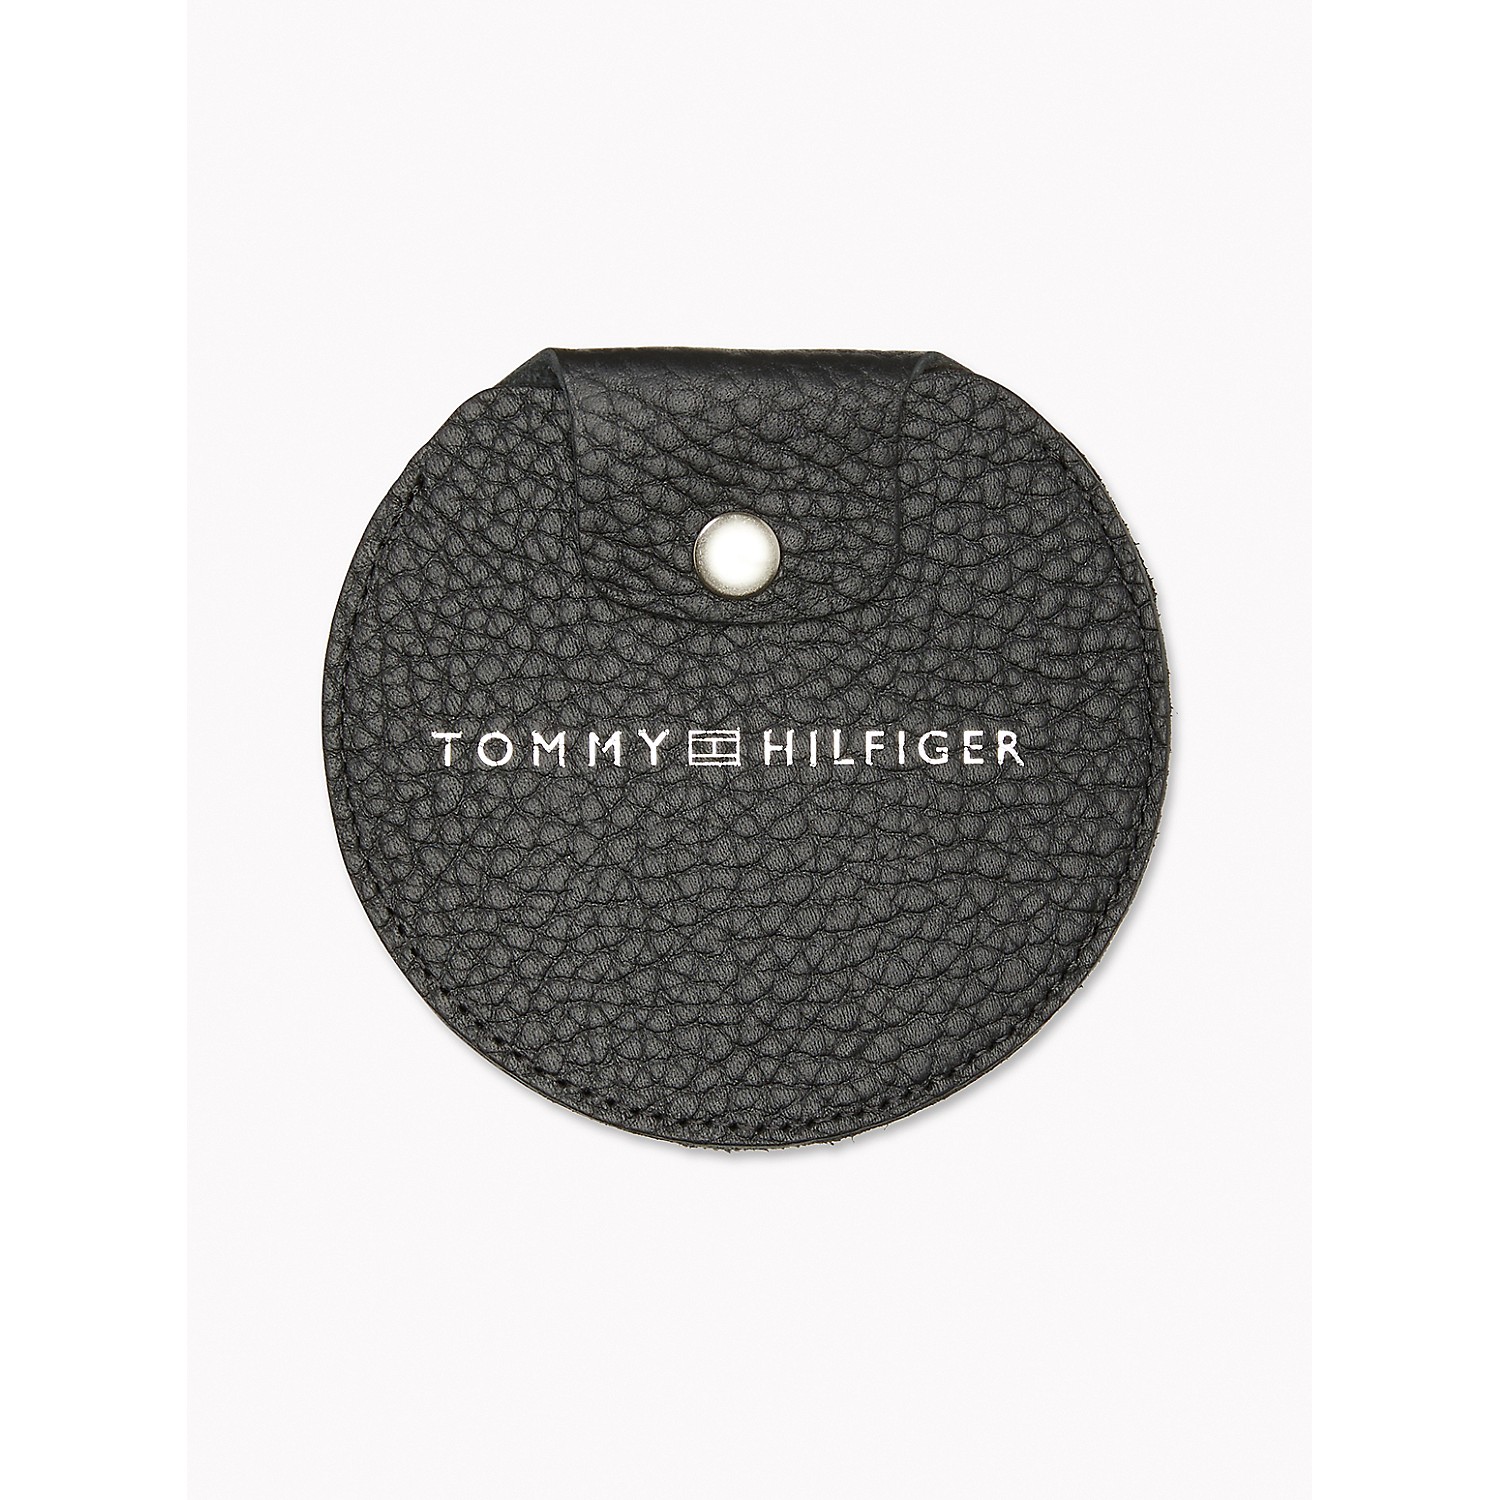 TOMMY HILFIGER Black Earbud Holder